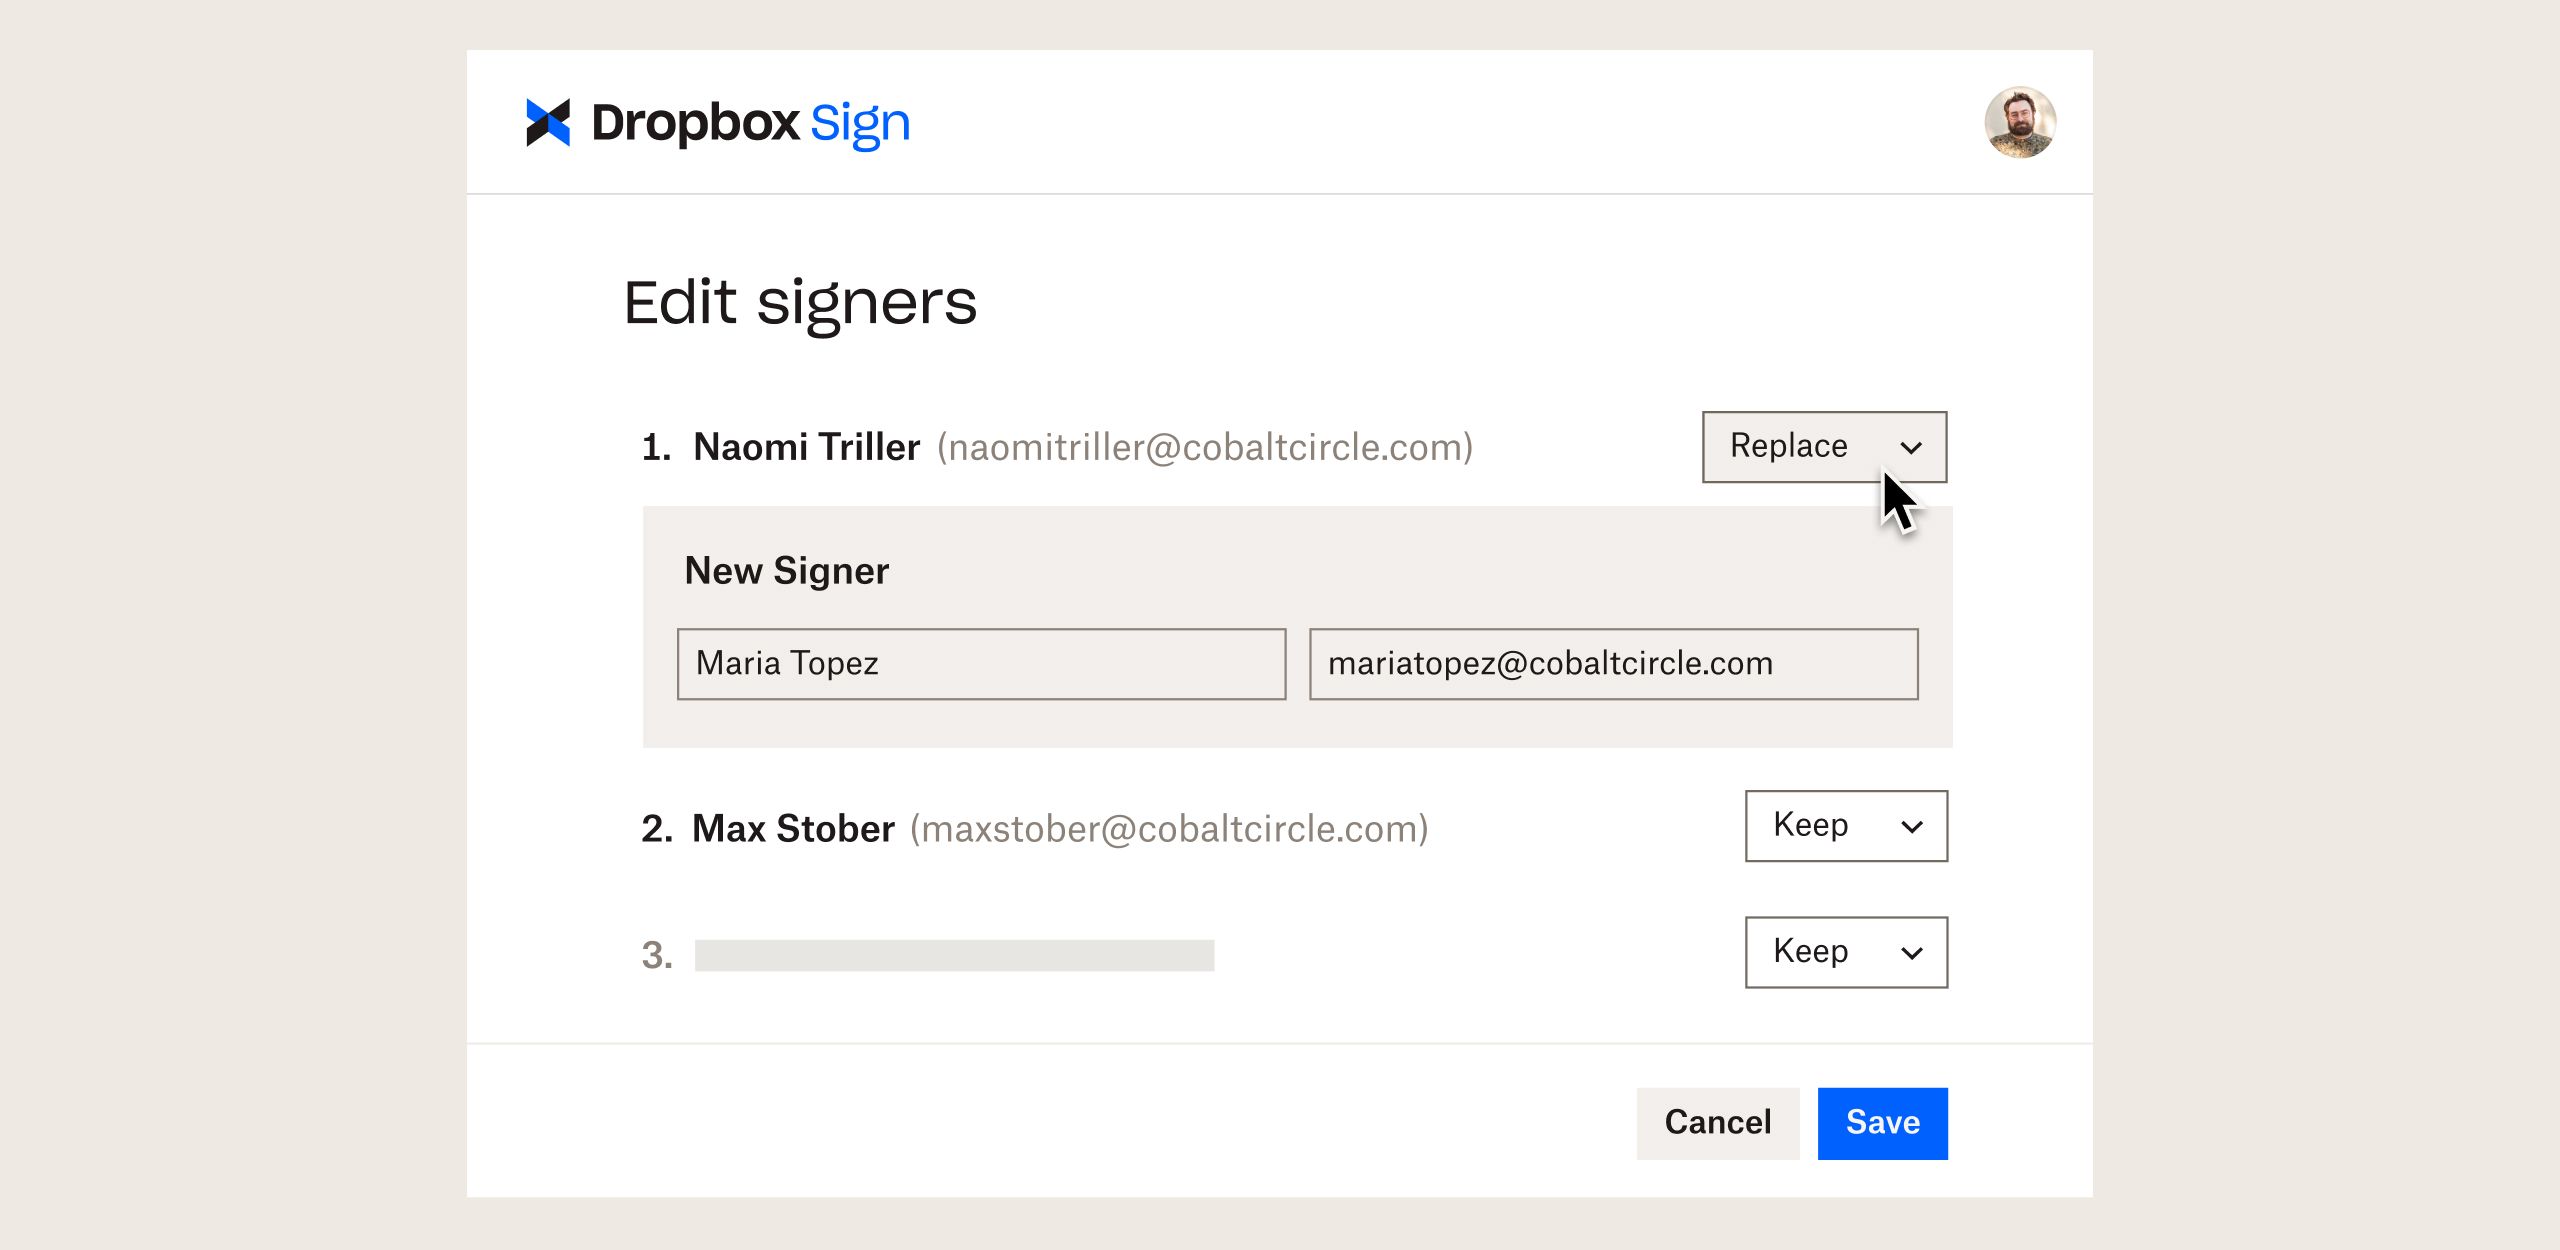 UI ของผลิตภัณฑ์แสดงวิธีจัดการผู้ลงนามใน Dropbox Sign